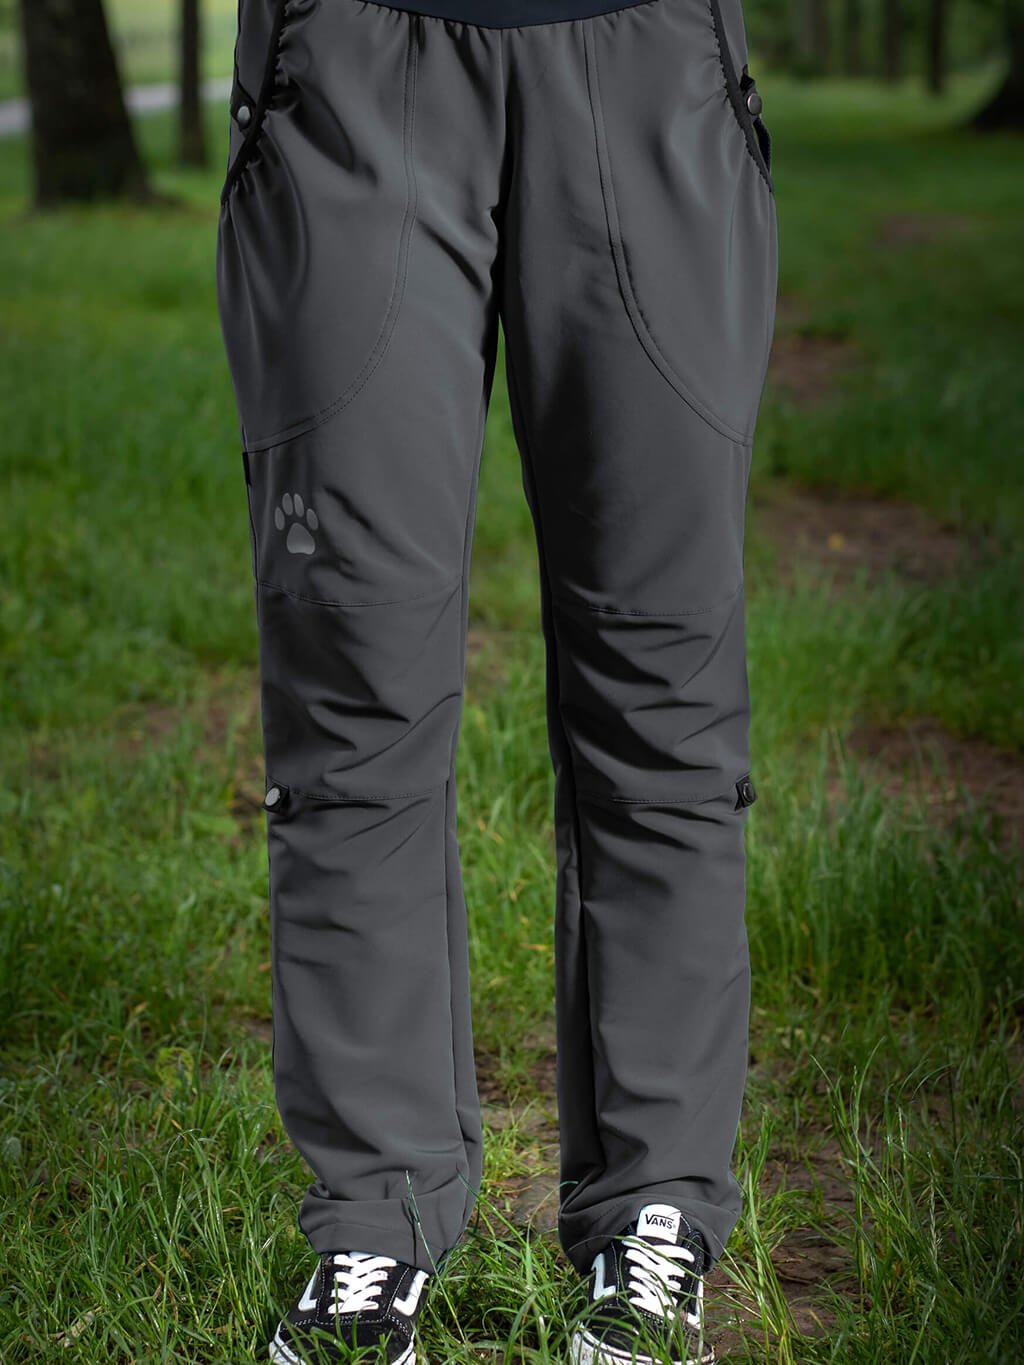 Dámské letní výcvikové kalhoty 4dox kovové 